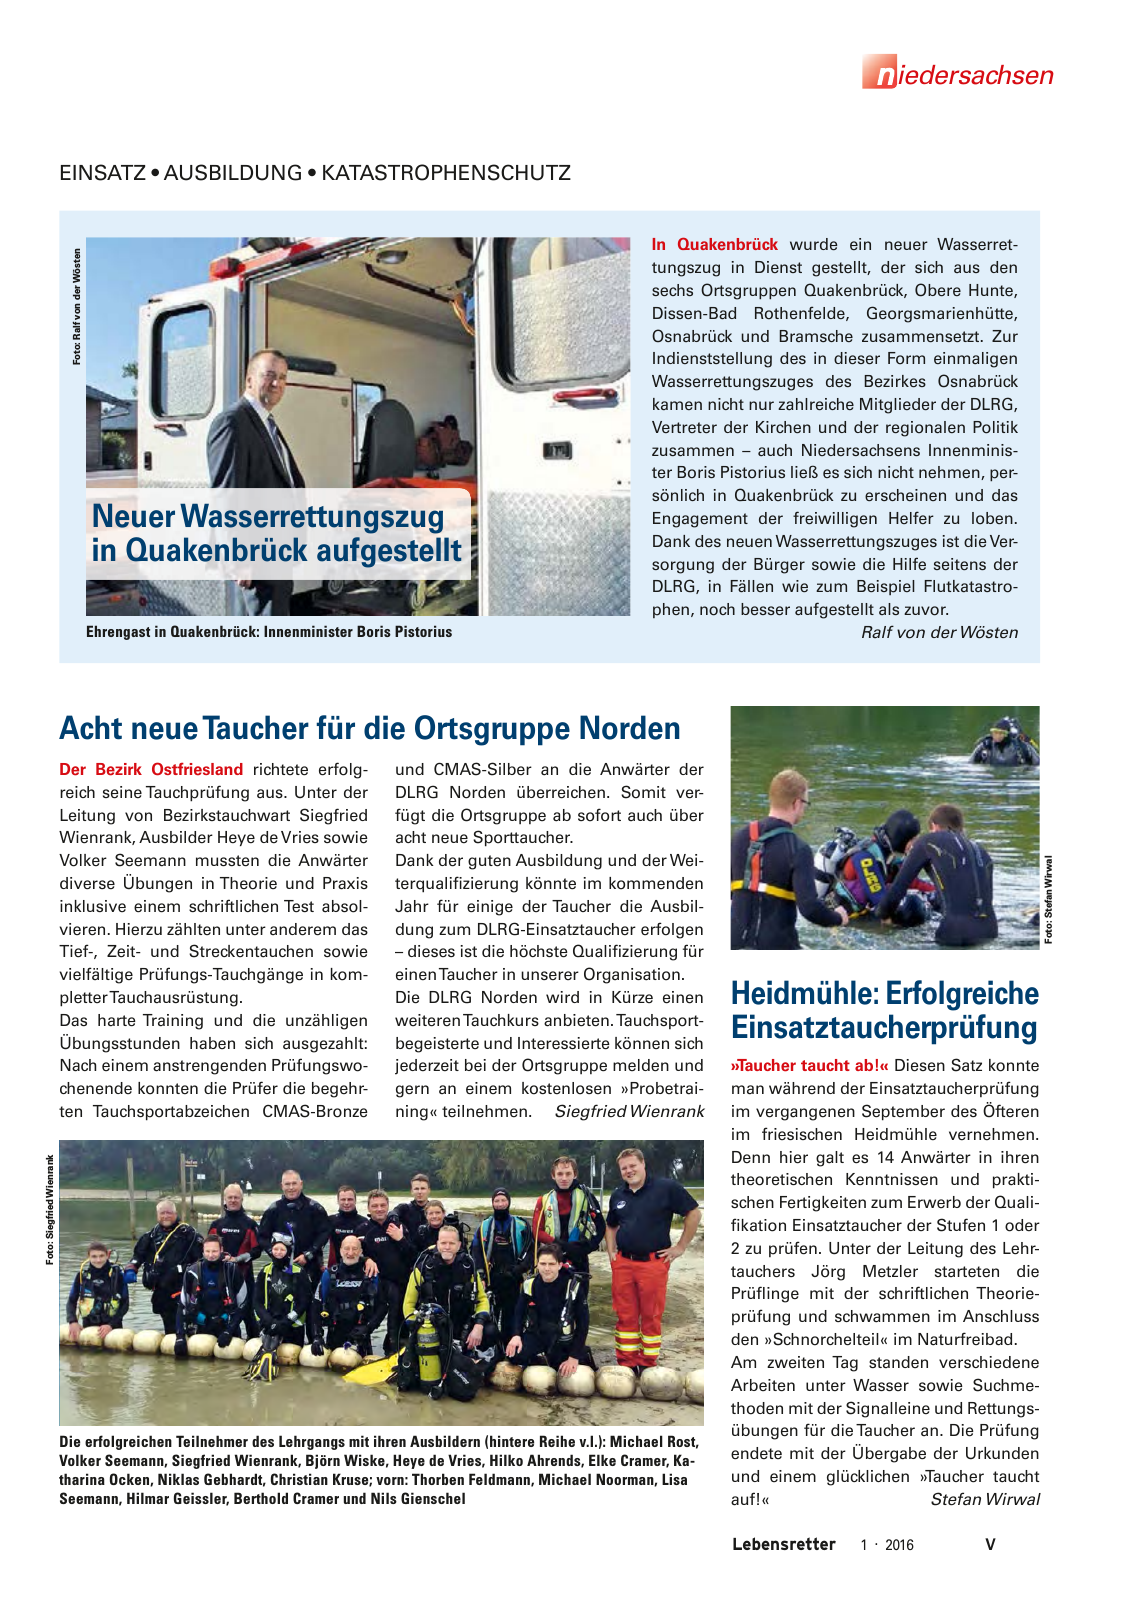 Vorschau Lebensretter 1/2016 - Regionalausgabe Niedersachsen Seite 7